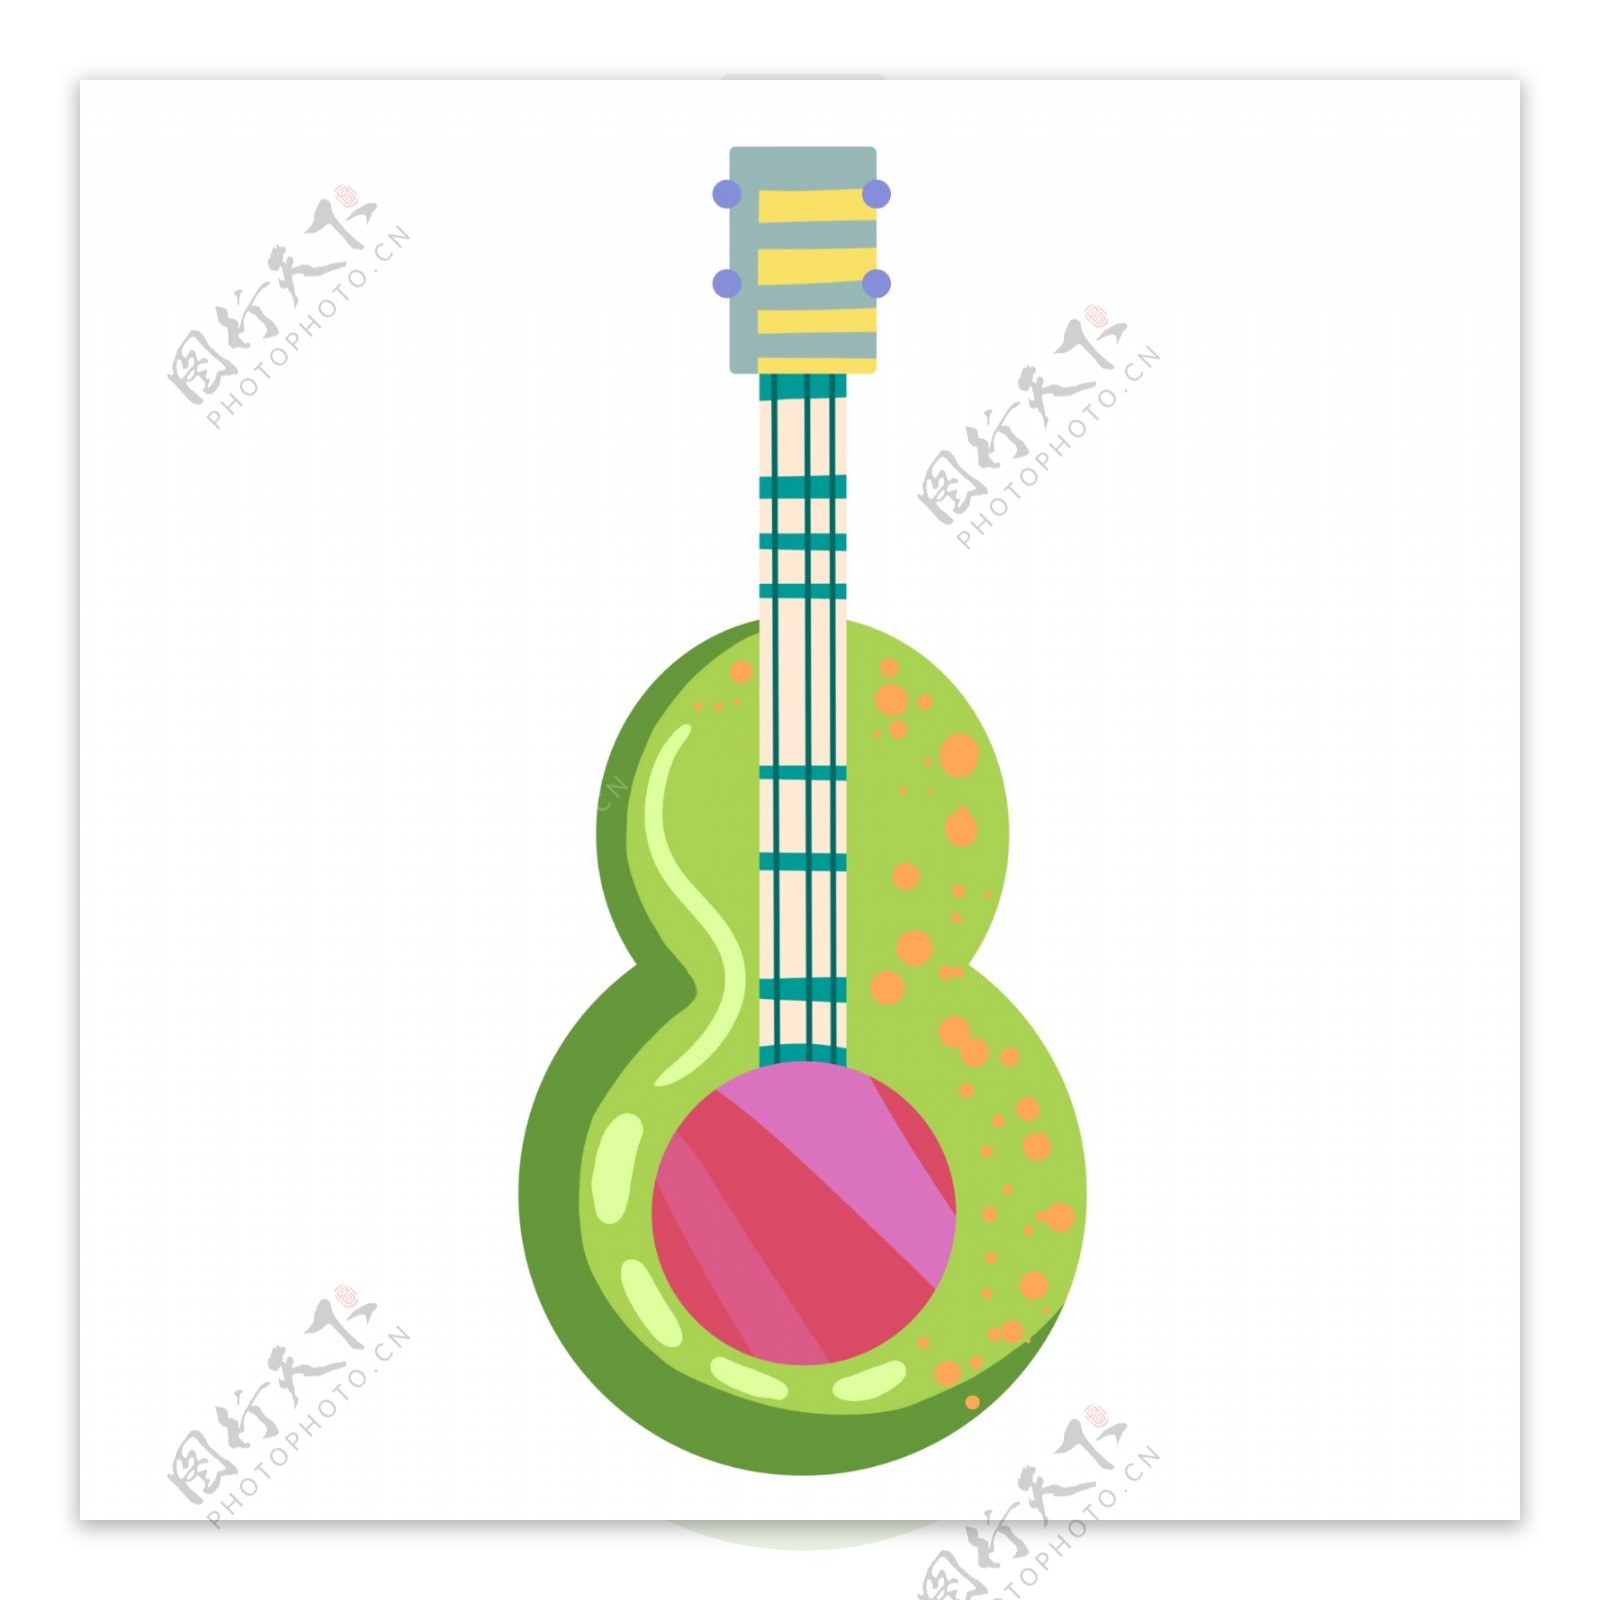 绿色的乐器吉他插画